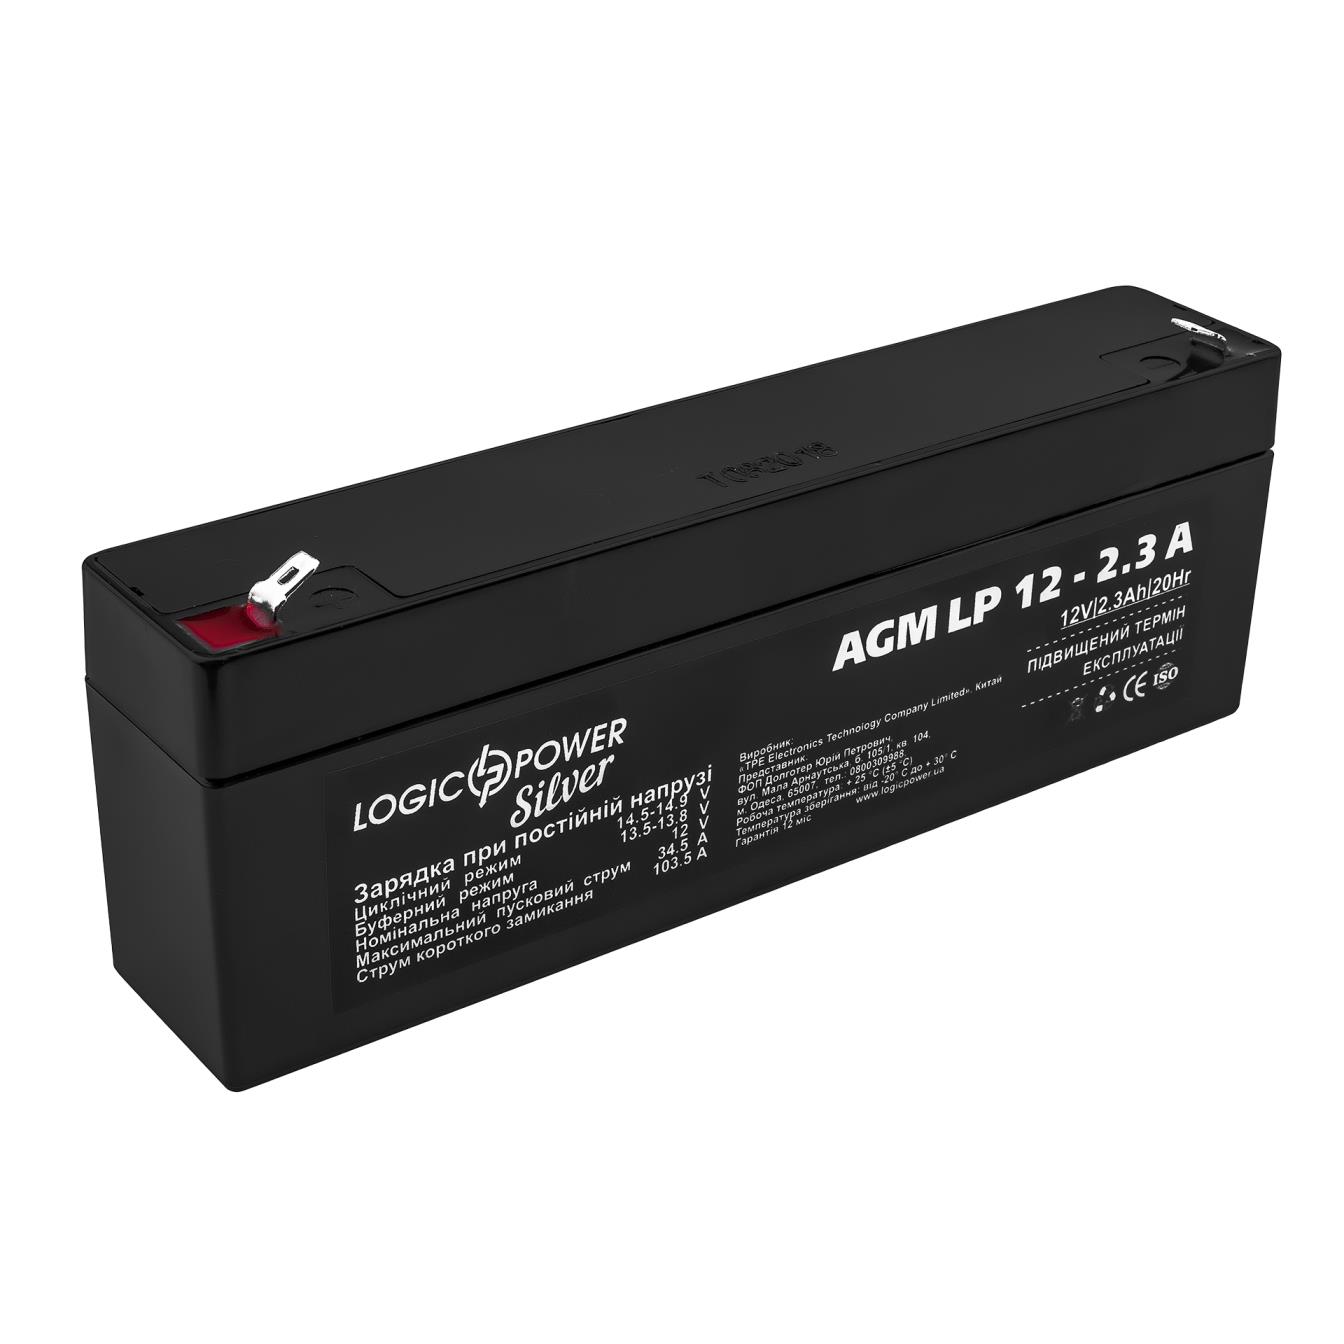 Акумулятор свинцево-кислотний LogicPower AGM LP 12V - 2.3 Ah Silver (3224)